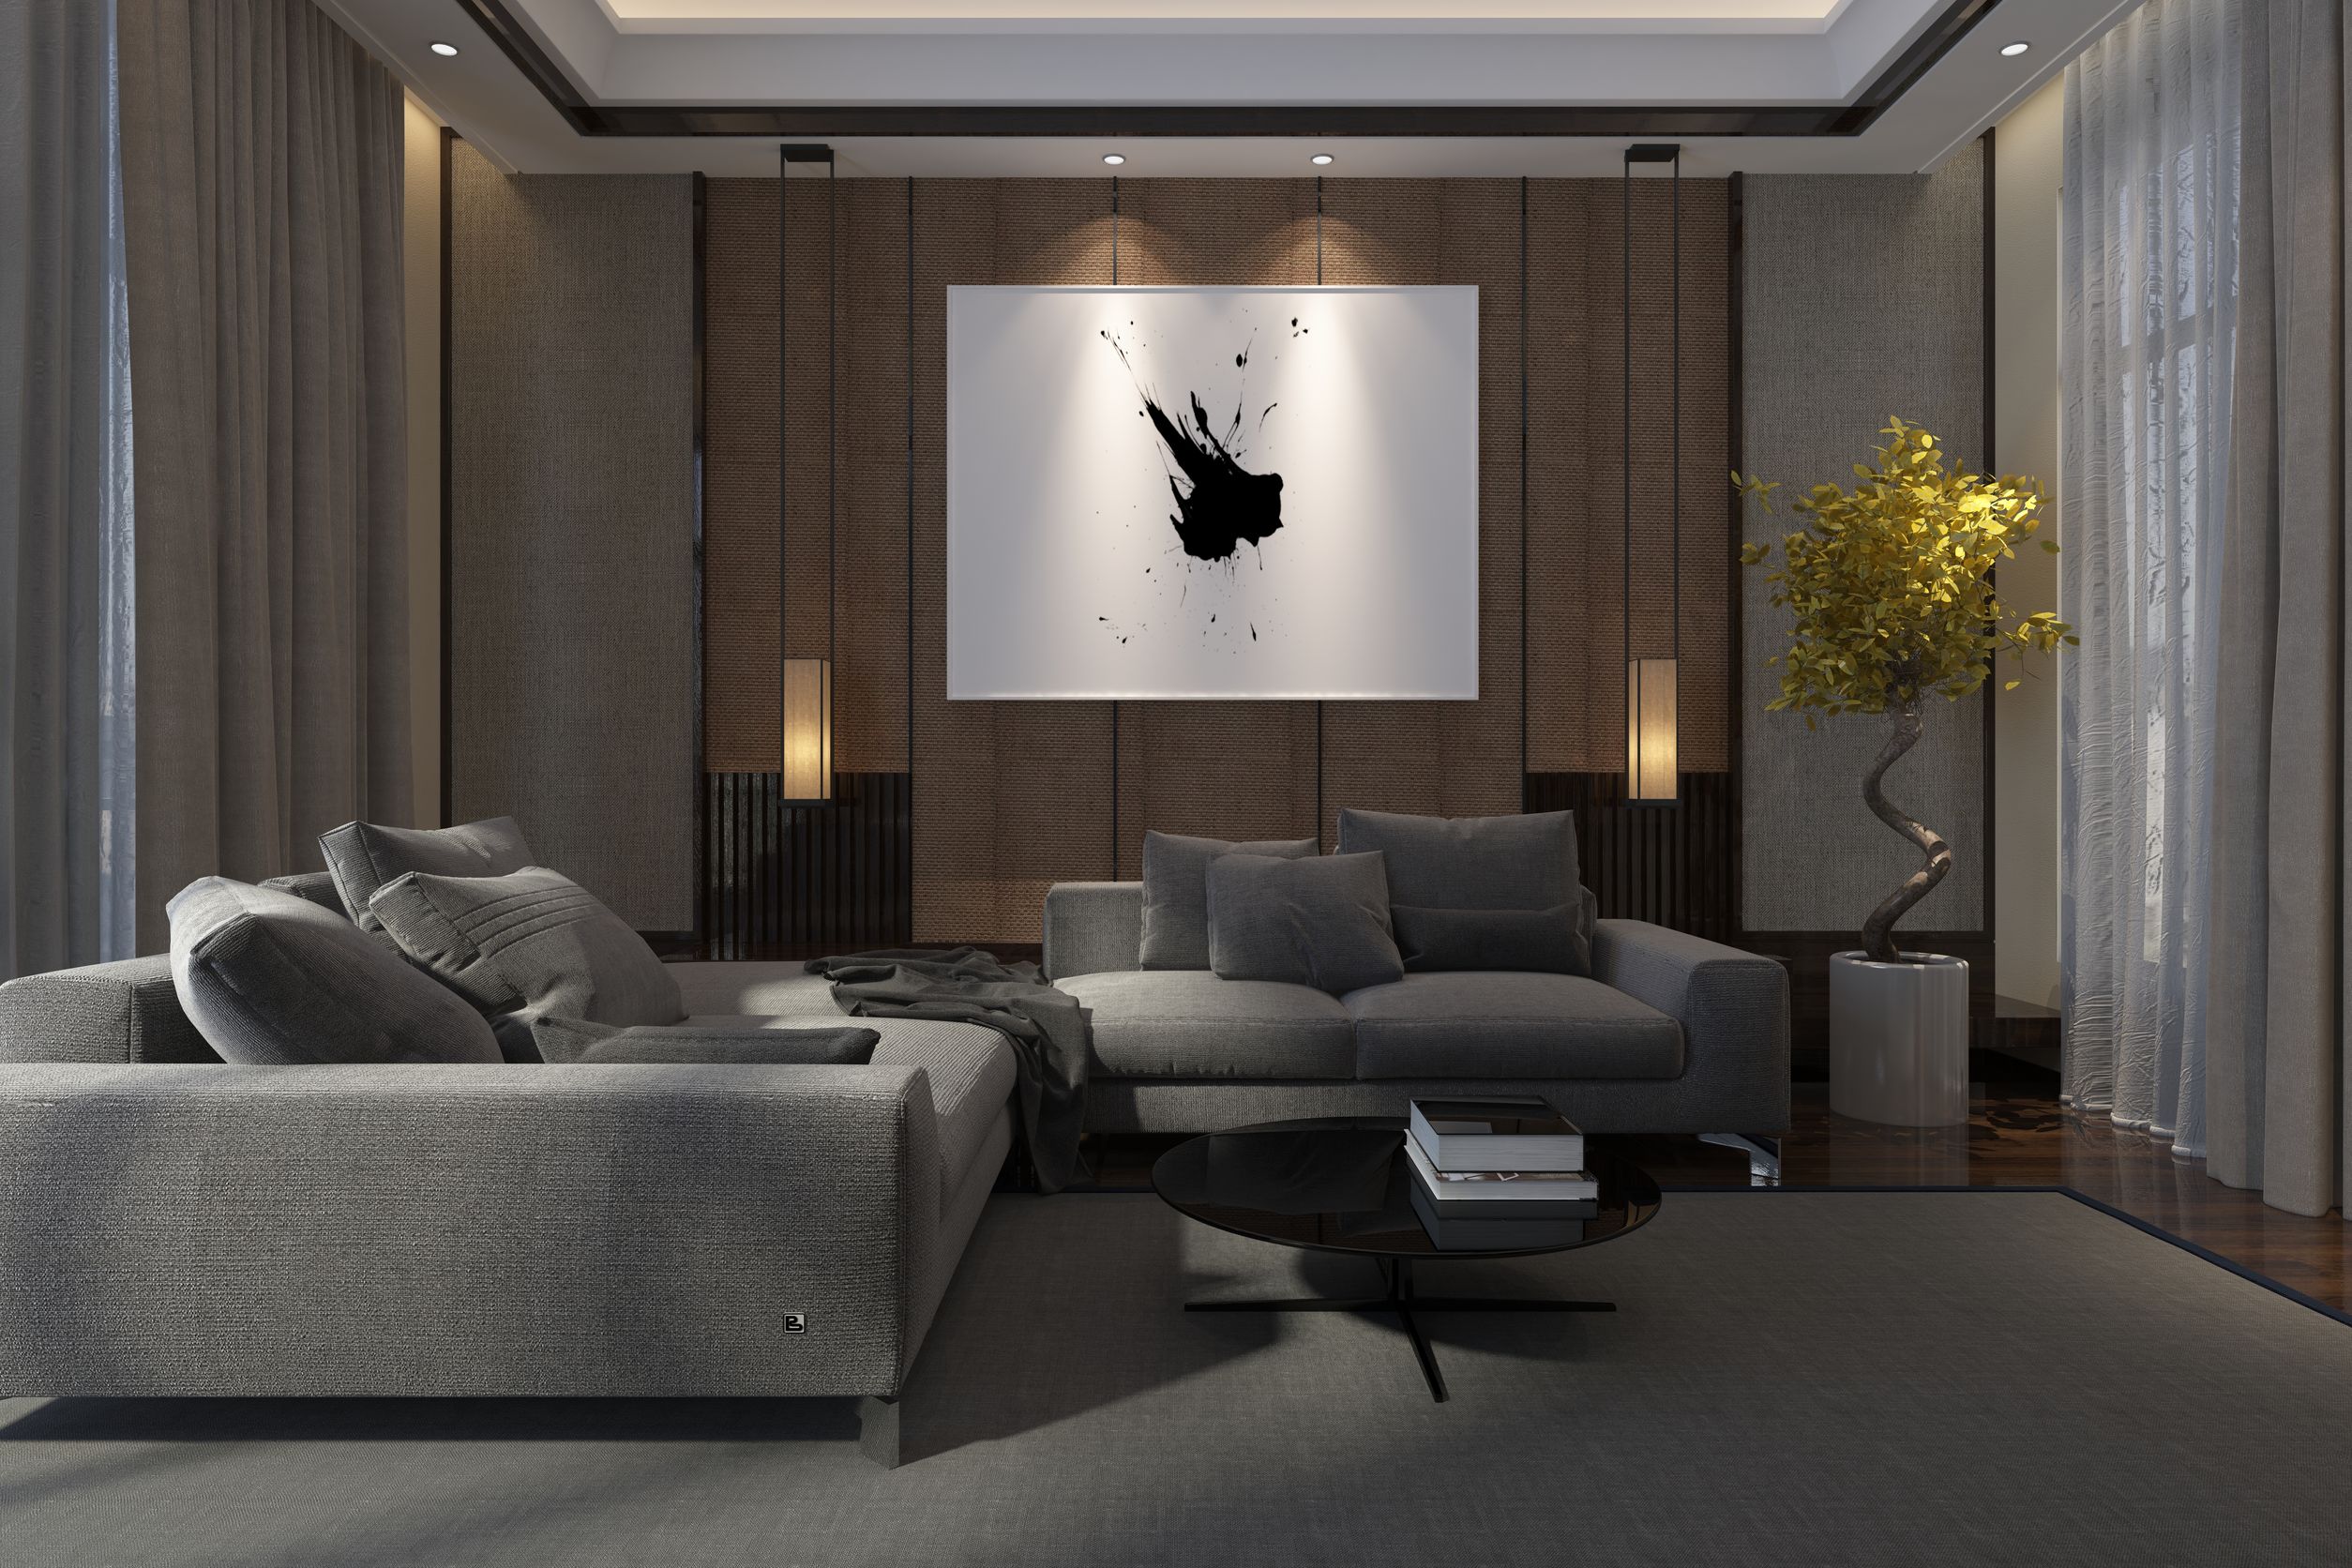 imagen destacada del post Cómo crear diferentes ambientes con iluminación artificial en tu casa